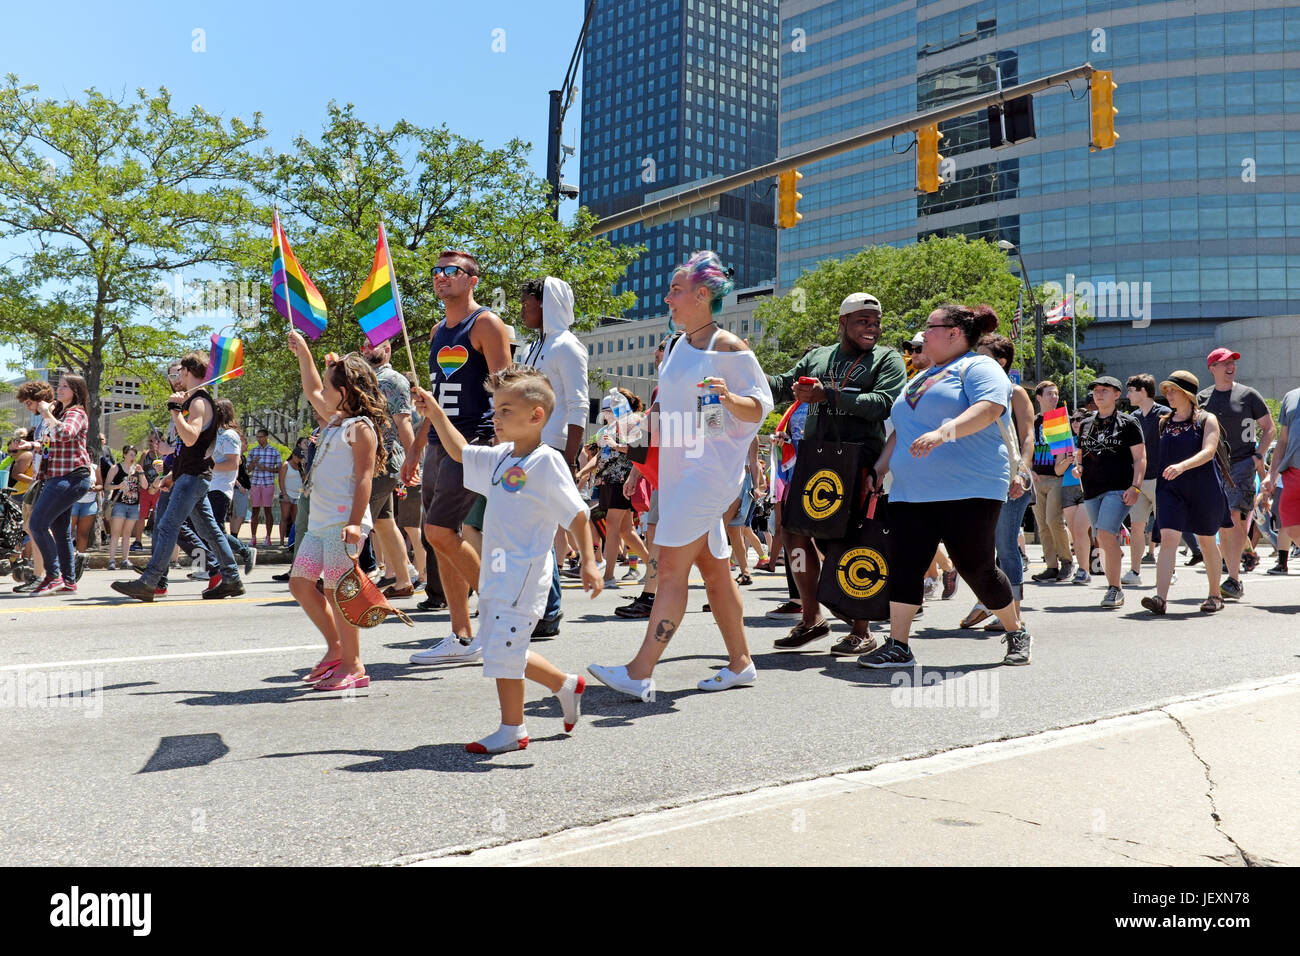 Bambini passeggiate Down East 9th Street mentre sventolando bandiere arcobaleno durante il mese di giugno 24, 2017 LGBT Pride Parade in downtown Cleveland, Ohio, USA. Foto Stock